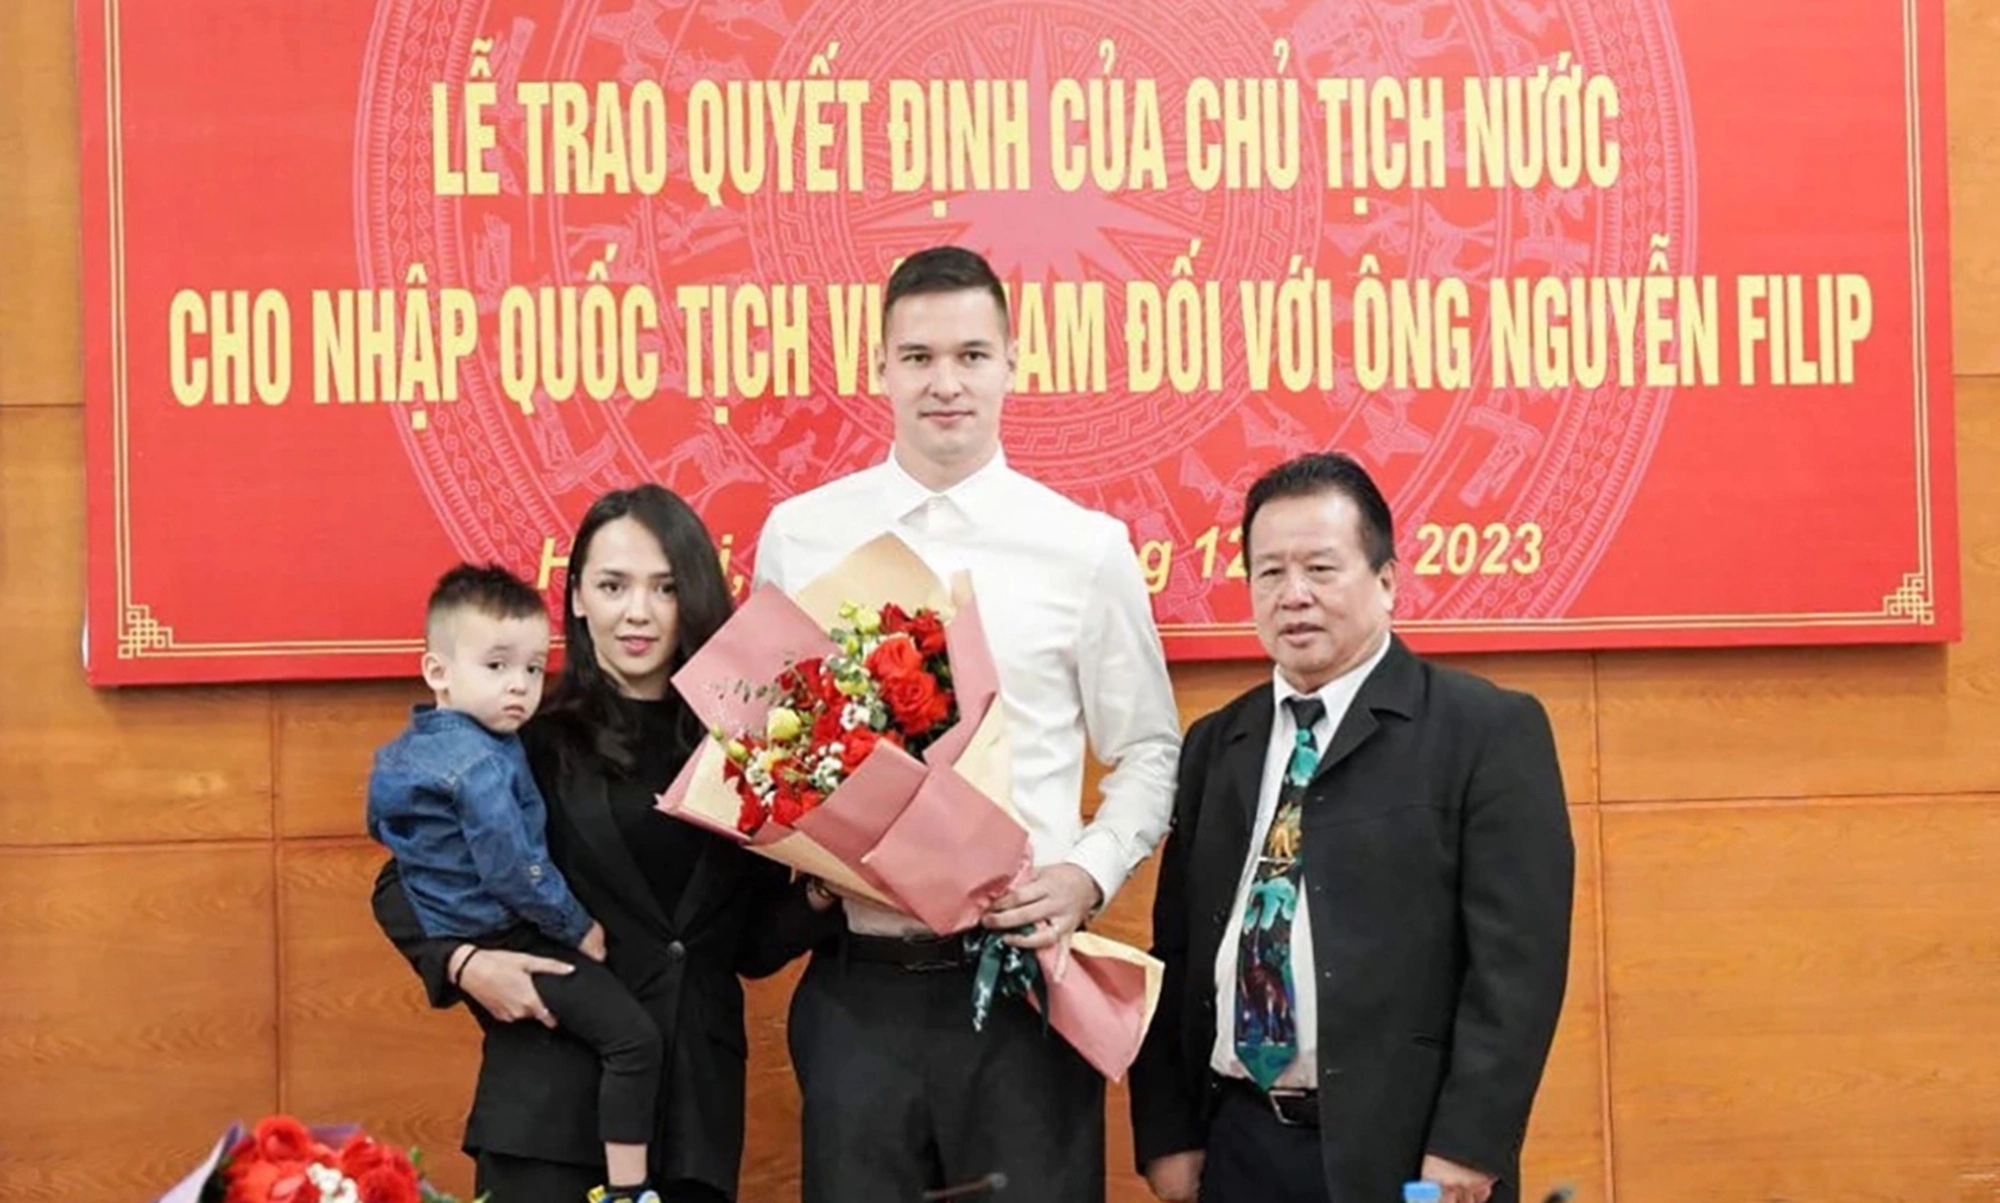 Nguyễn Filip kể hành trình 9 năm nhập quốc tịch Việt Nam